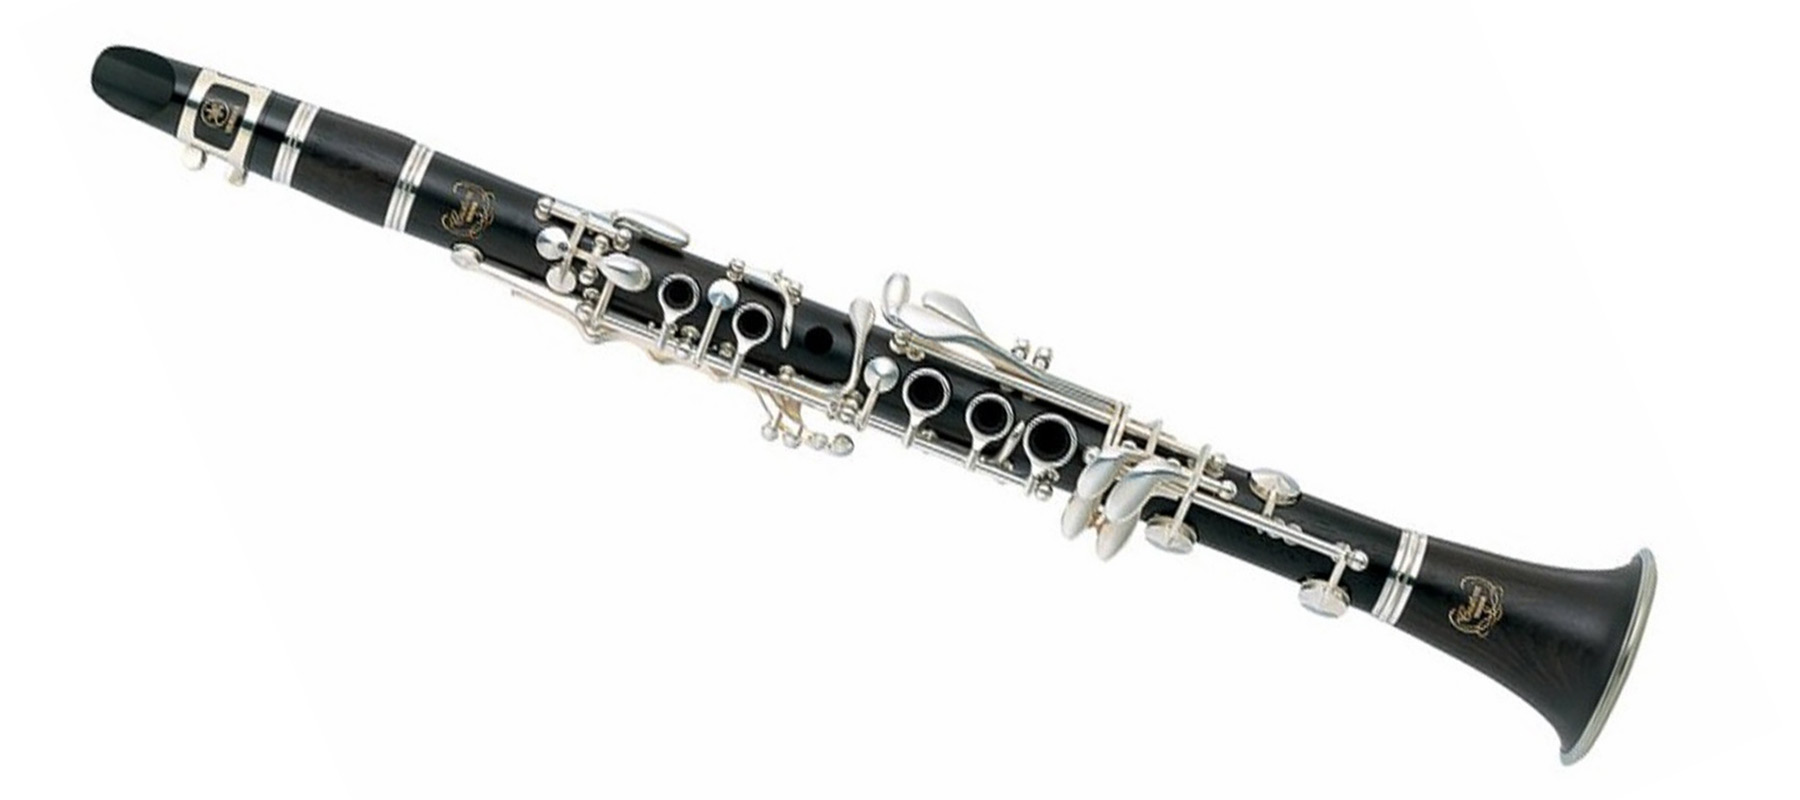 Yamaha 881 Clarinet - Professional Eb Clarinet for Sale